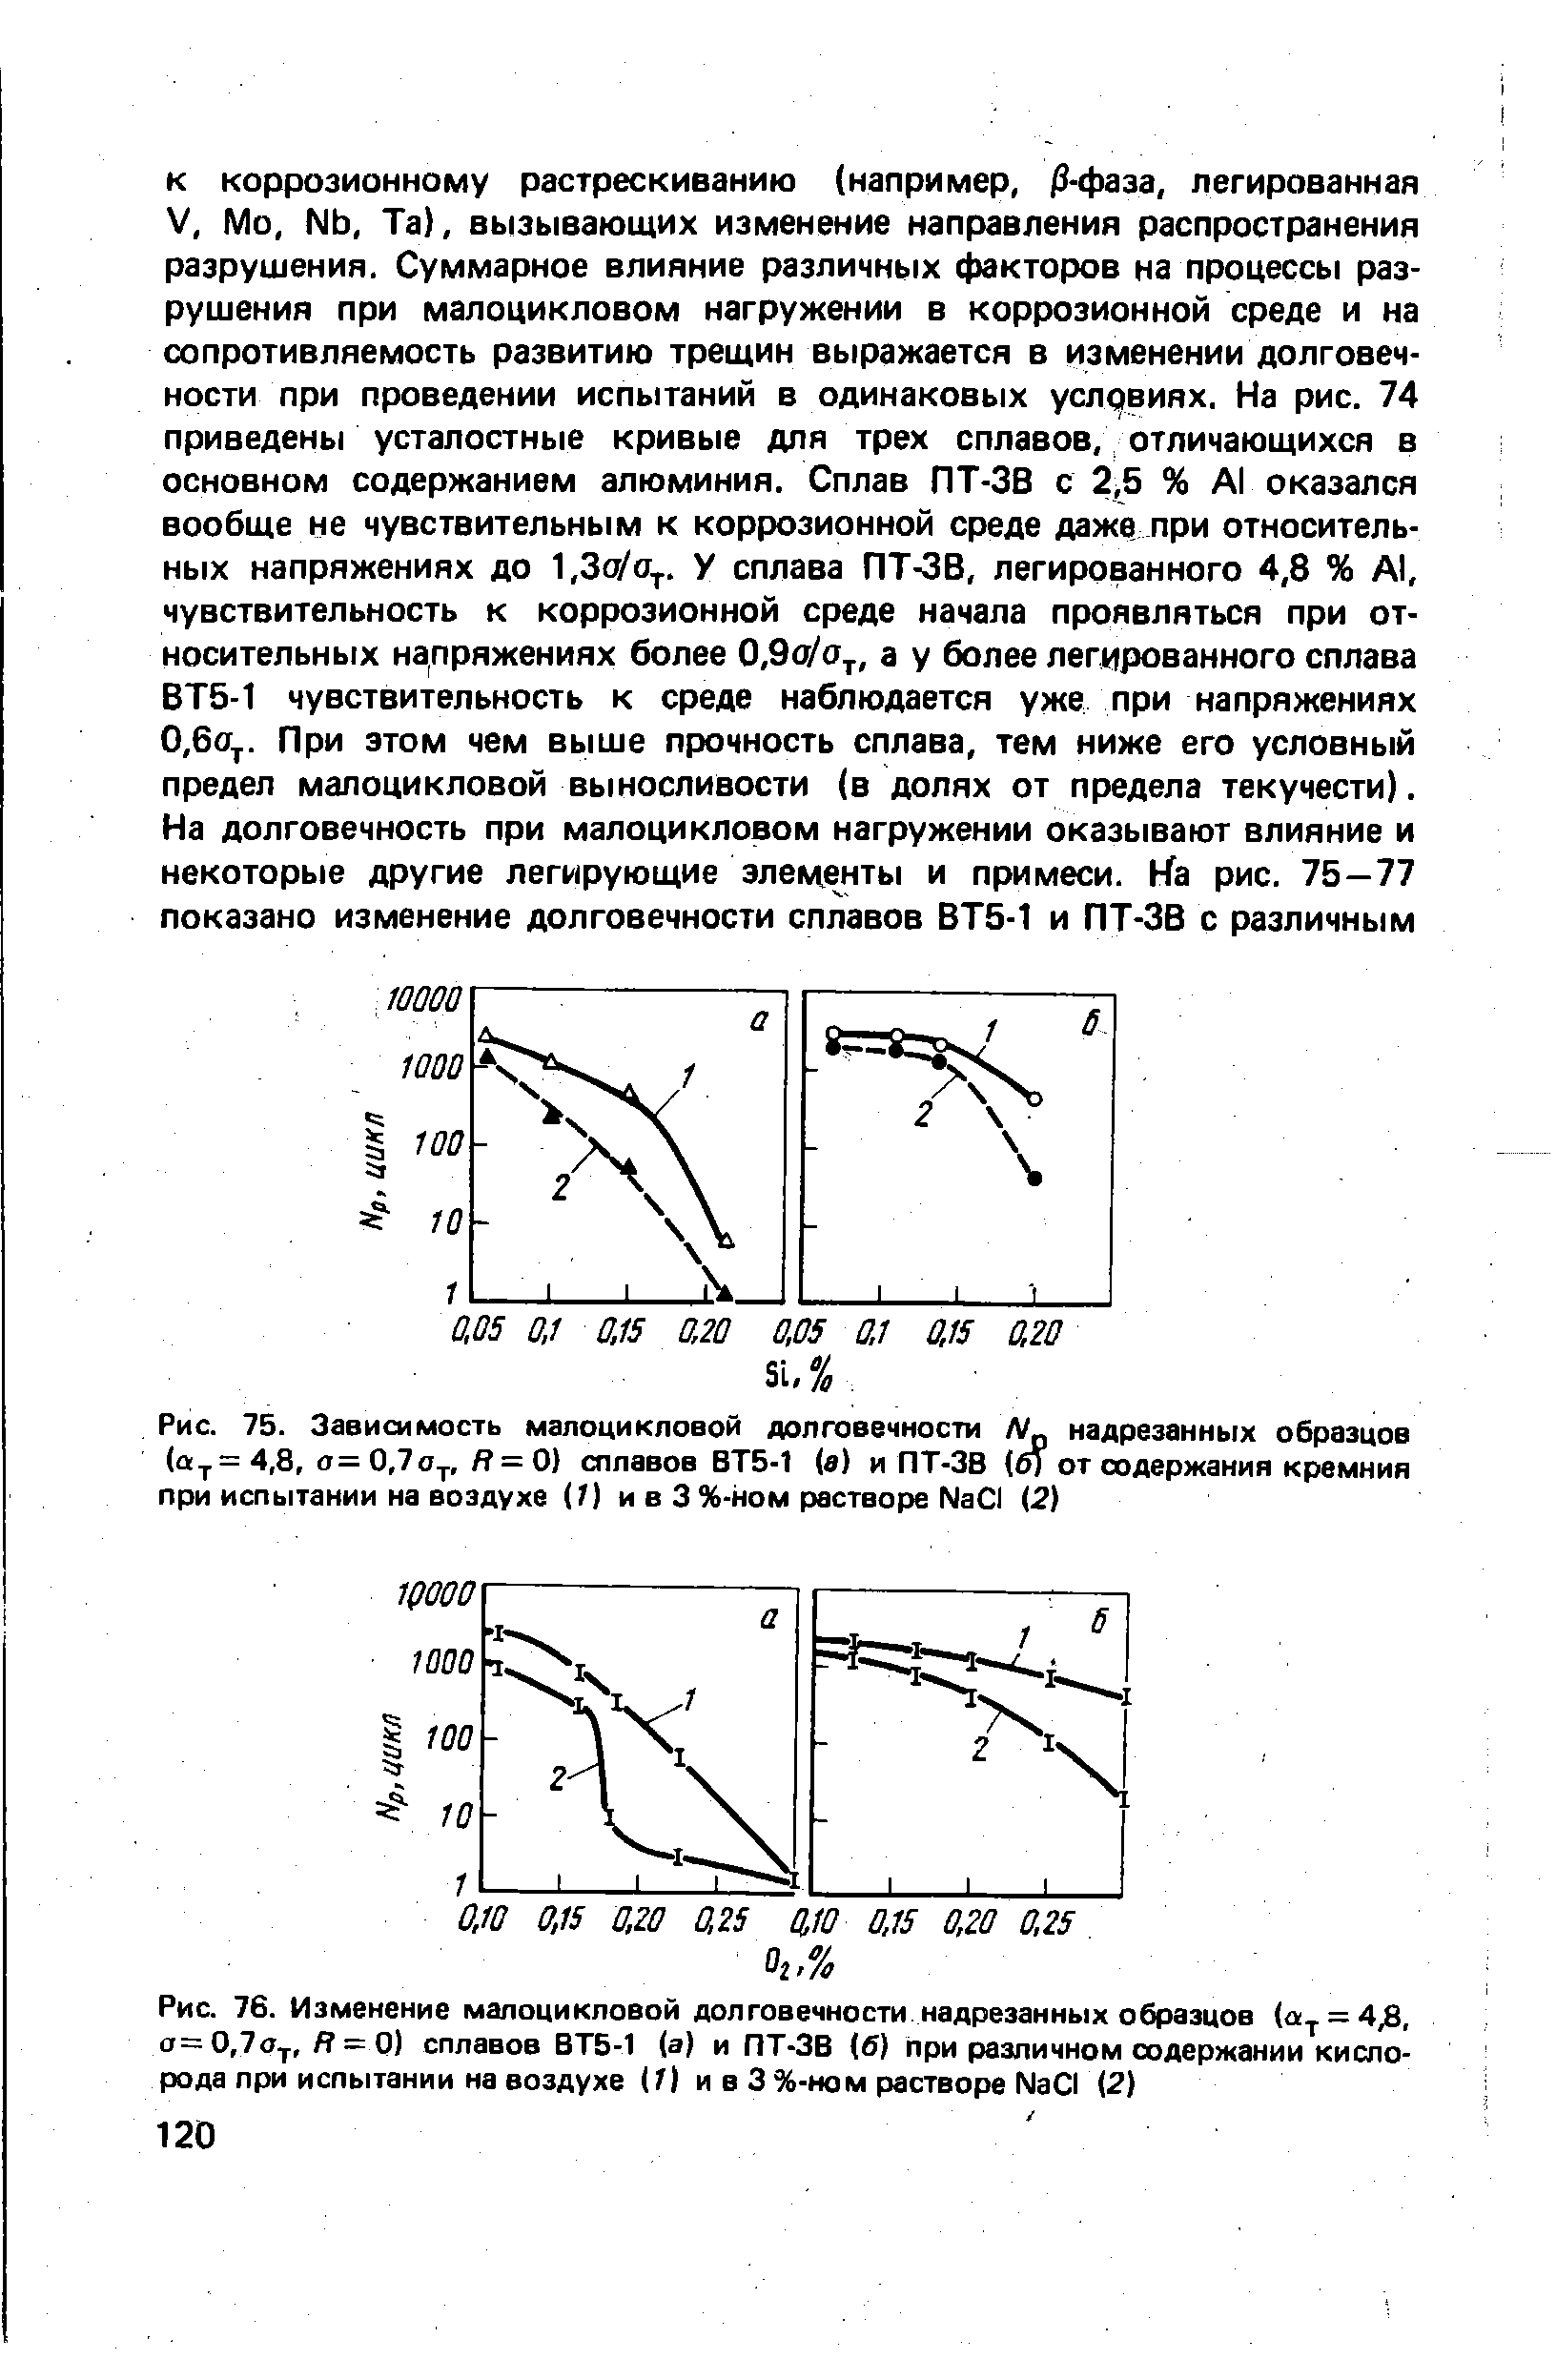 Рис. 76. Изменение малоцикловой долговечности надрезанных образцов (а. = 4,8, a 0,7oy,R — 0) сплавов ВТБ-1 (а) и ПТ-ЗВ (б) при различном <a href="/info/321463">содержании кислорода</a> при испытании на воздухе (1) и в 3 %-ном растворе Na I (2)
